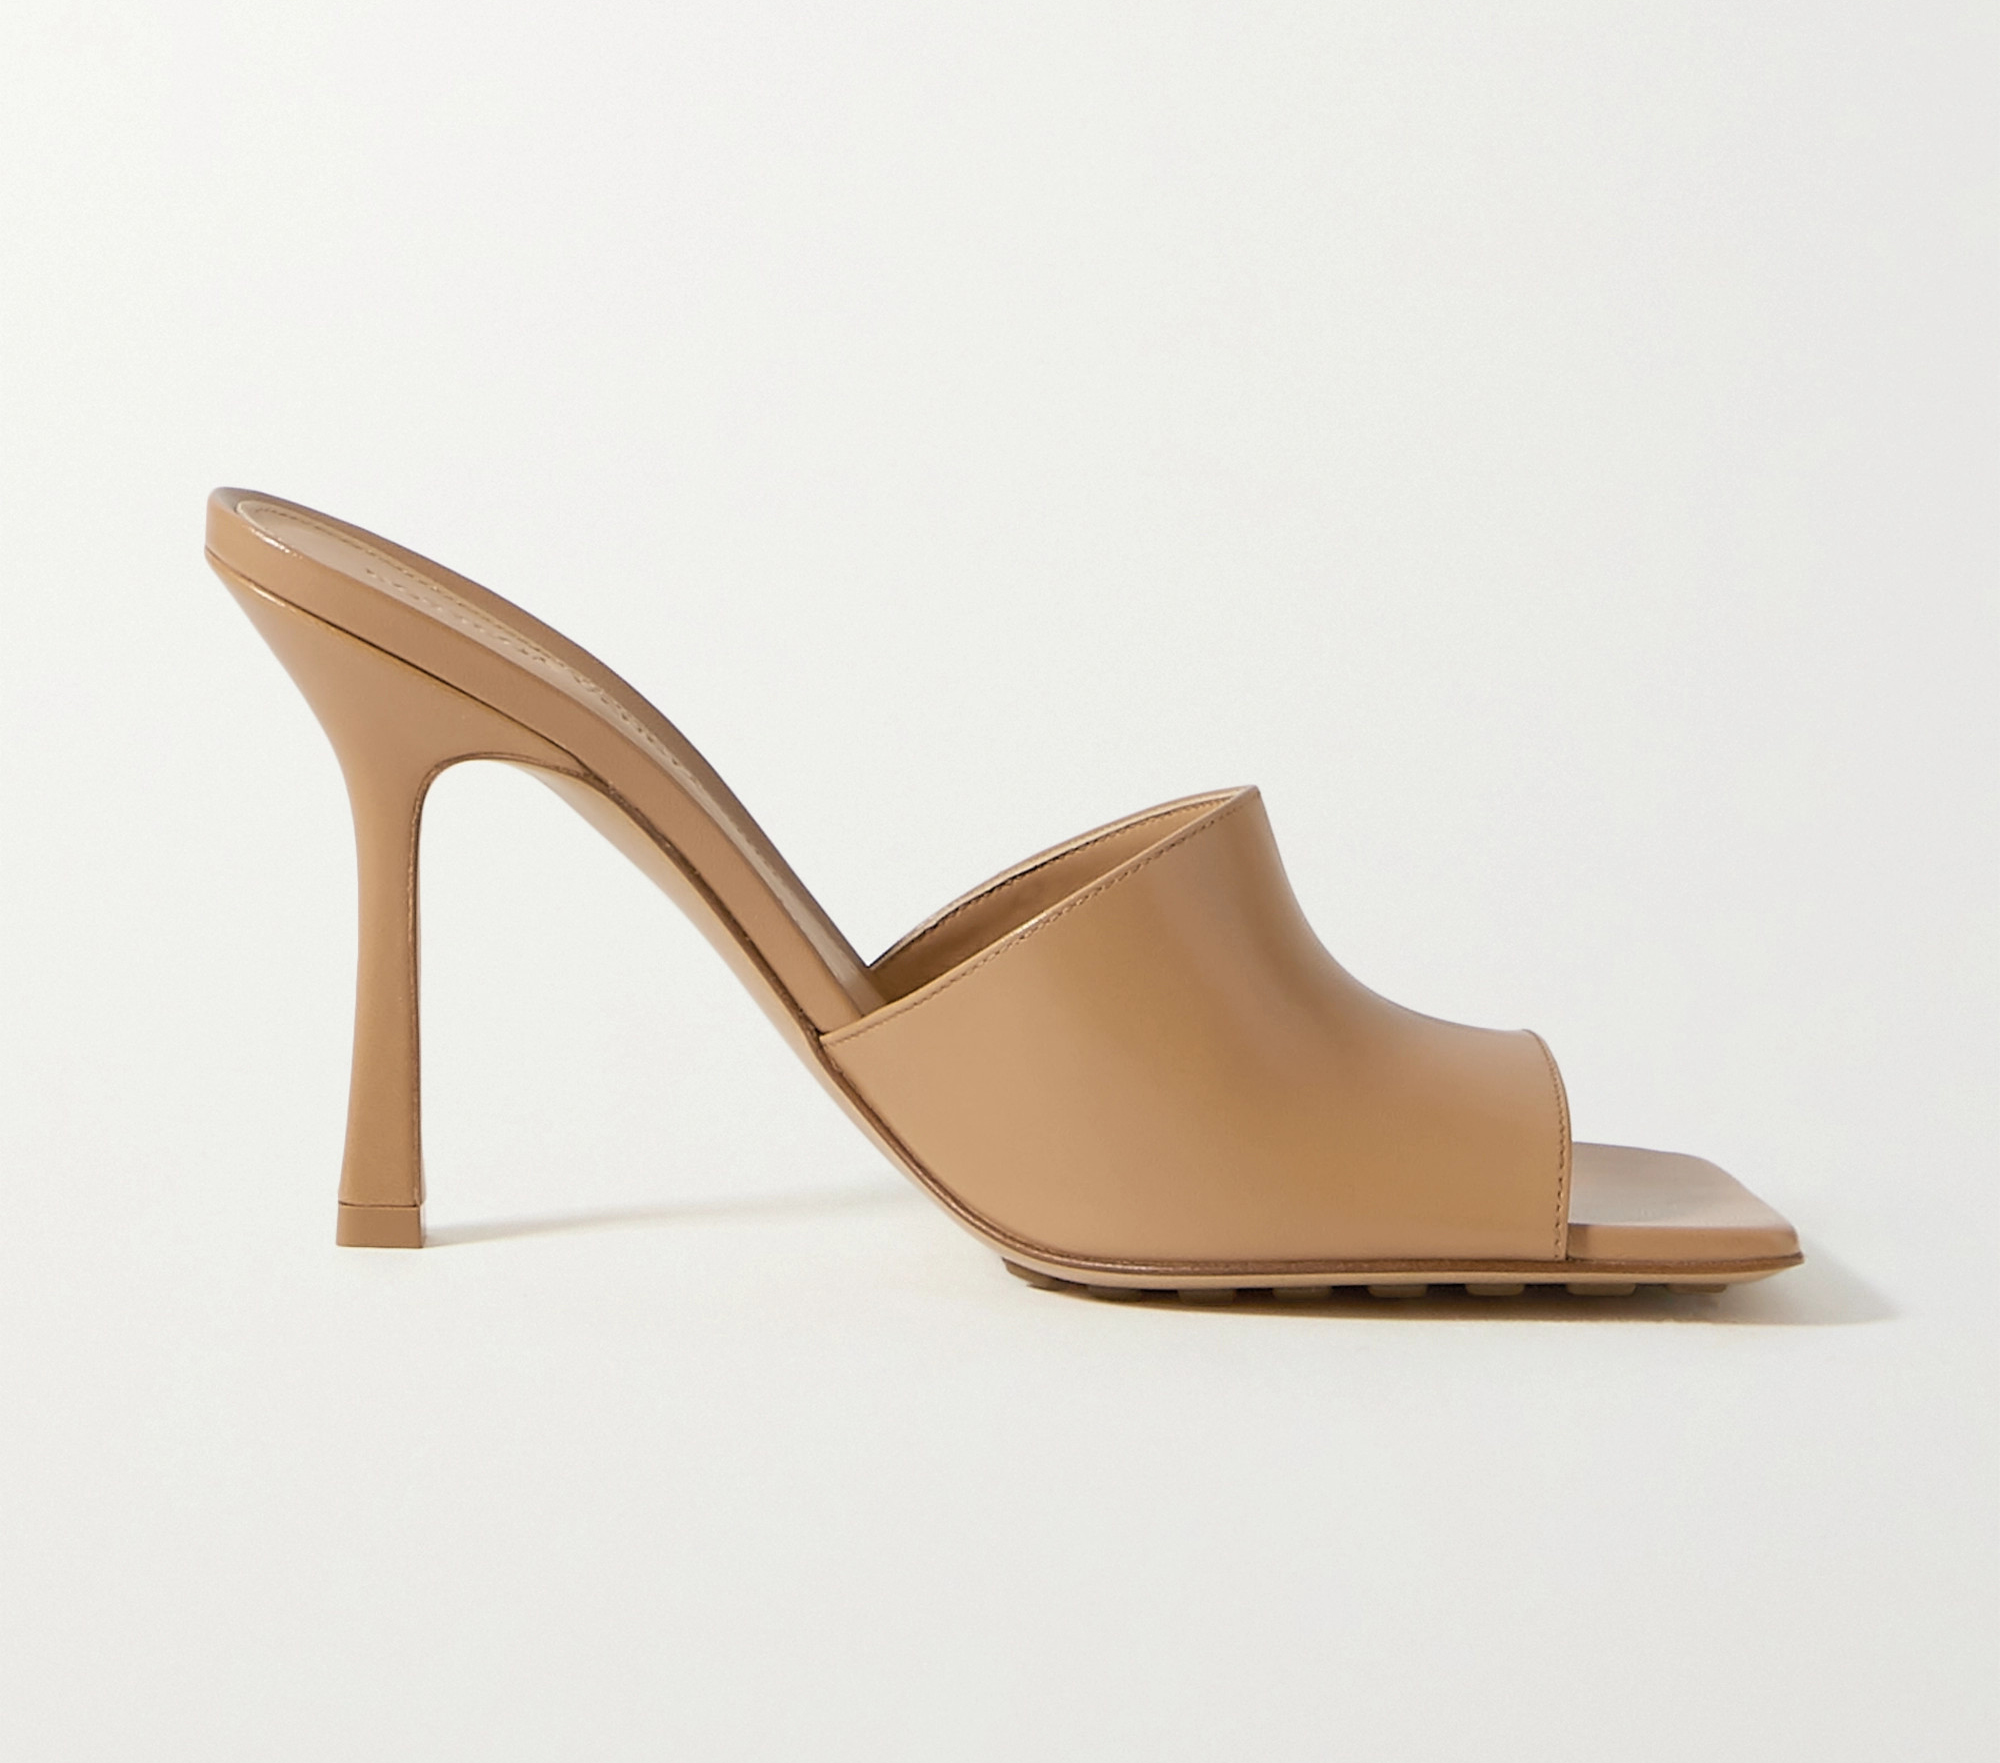 Designer Shoe Dupe - Bottega Veneta heeled mules